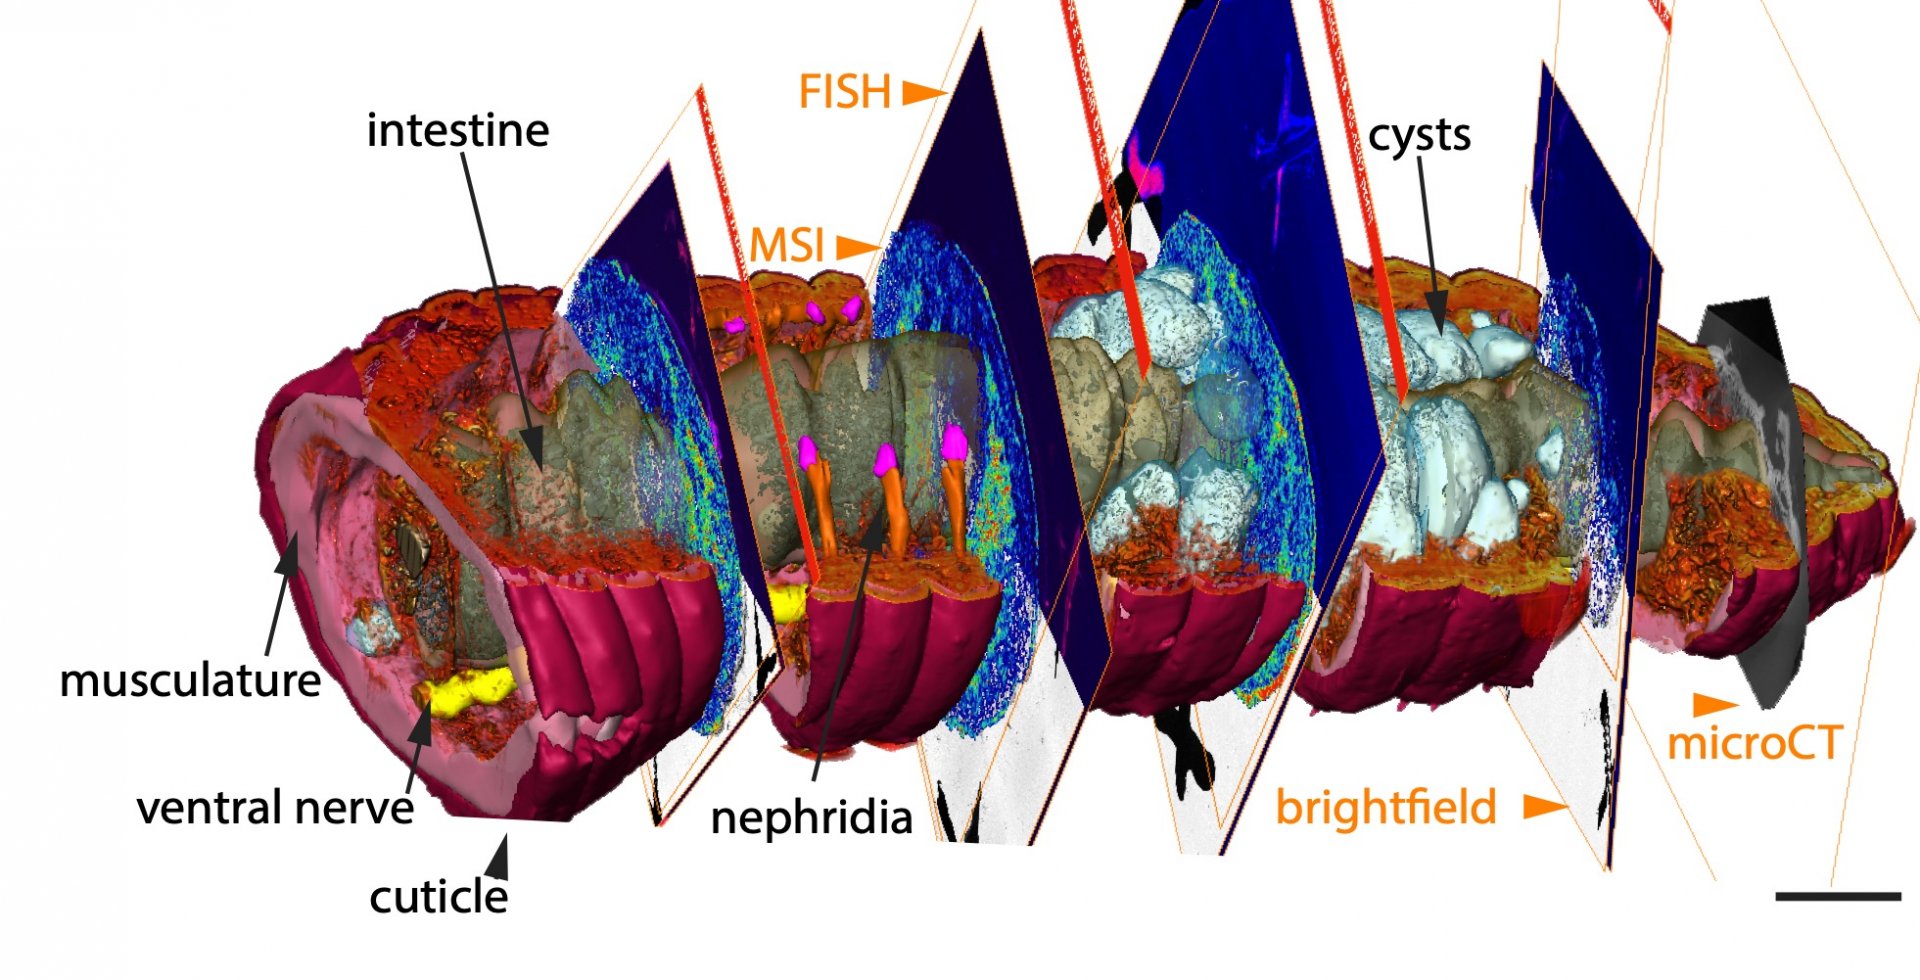 Der 3D-CHEMHIST-Atlas oder das hintere Ende des Regenwurms, der in dieser Studie verwendet wurde. Der Atlas kombiniert Daten der Massenspektrometrie-Bildgebung (MSI), der Fluoreszenz-in-situ-Hybridisierung (FISH) und der Mikro-Tomographie (micro-CT). (© Max-Planck-Institut für Marine Mikrobiologie/PNAS ref.)